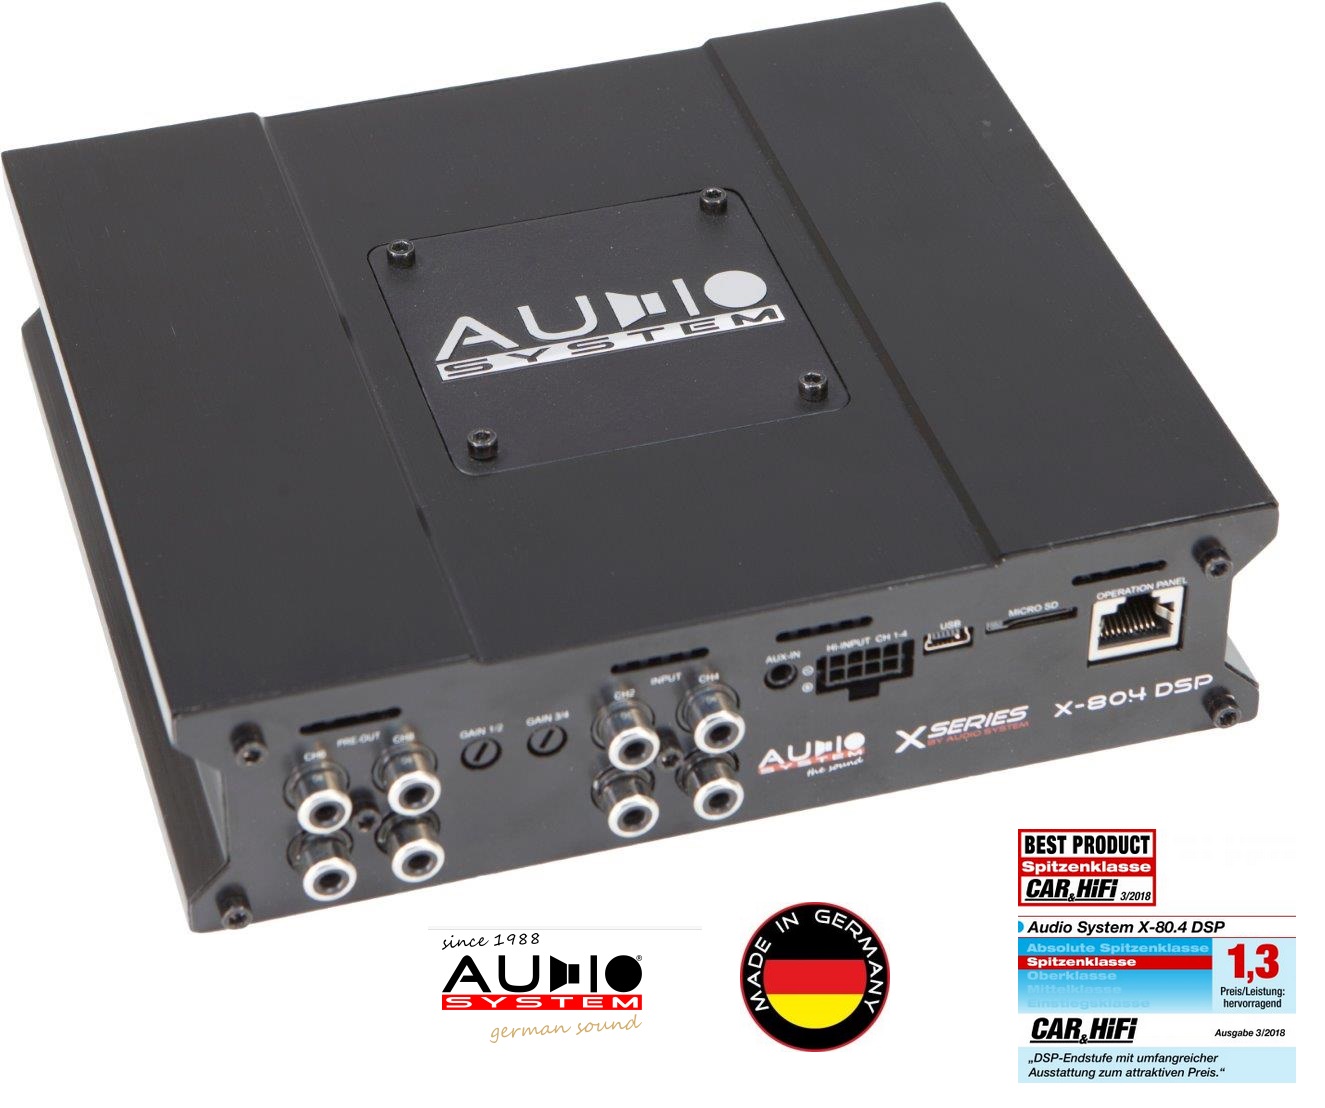 Audio System X-80.4 DSP 4-Kanal Digitaler Hochleistungs-Verstärker mit 8-Kanal DSP